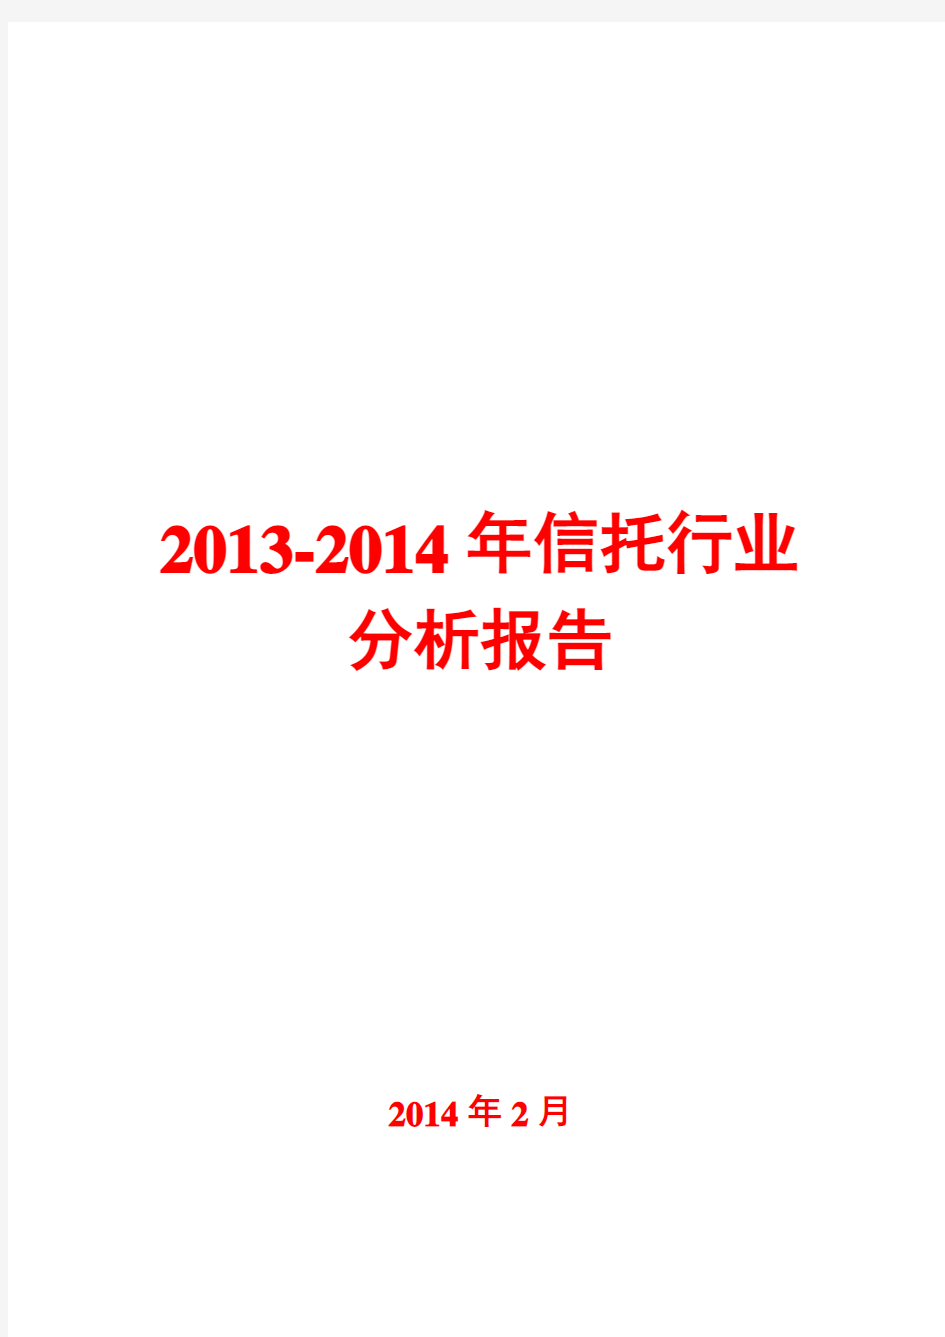 2013-2014年信托行业分析报告